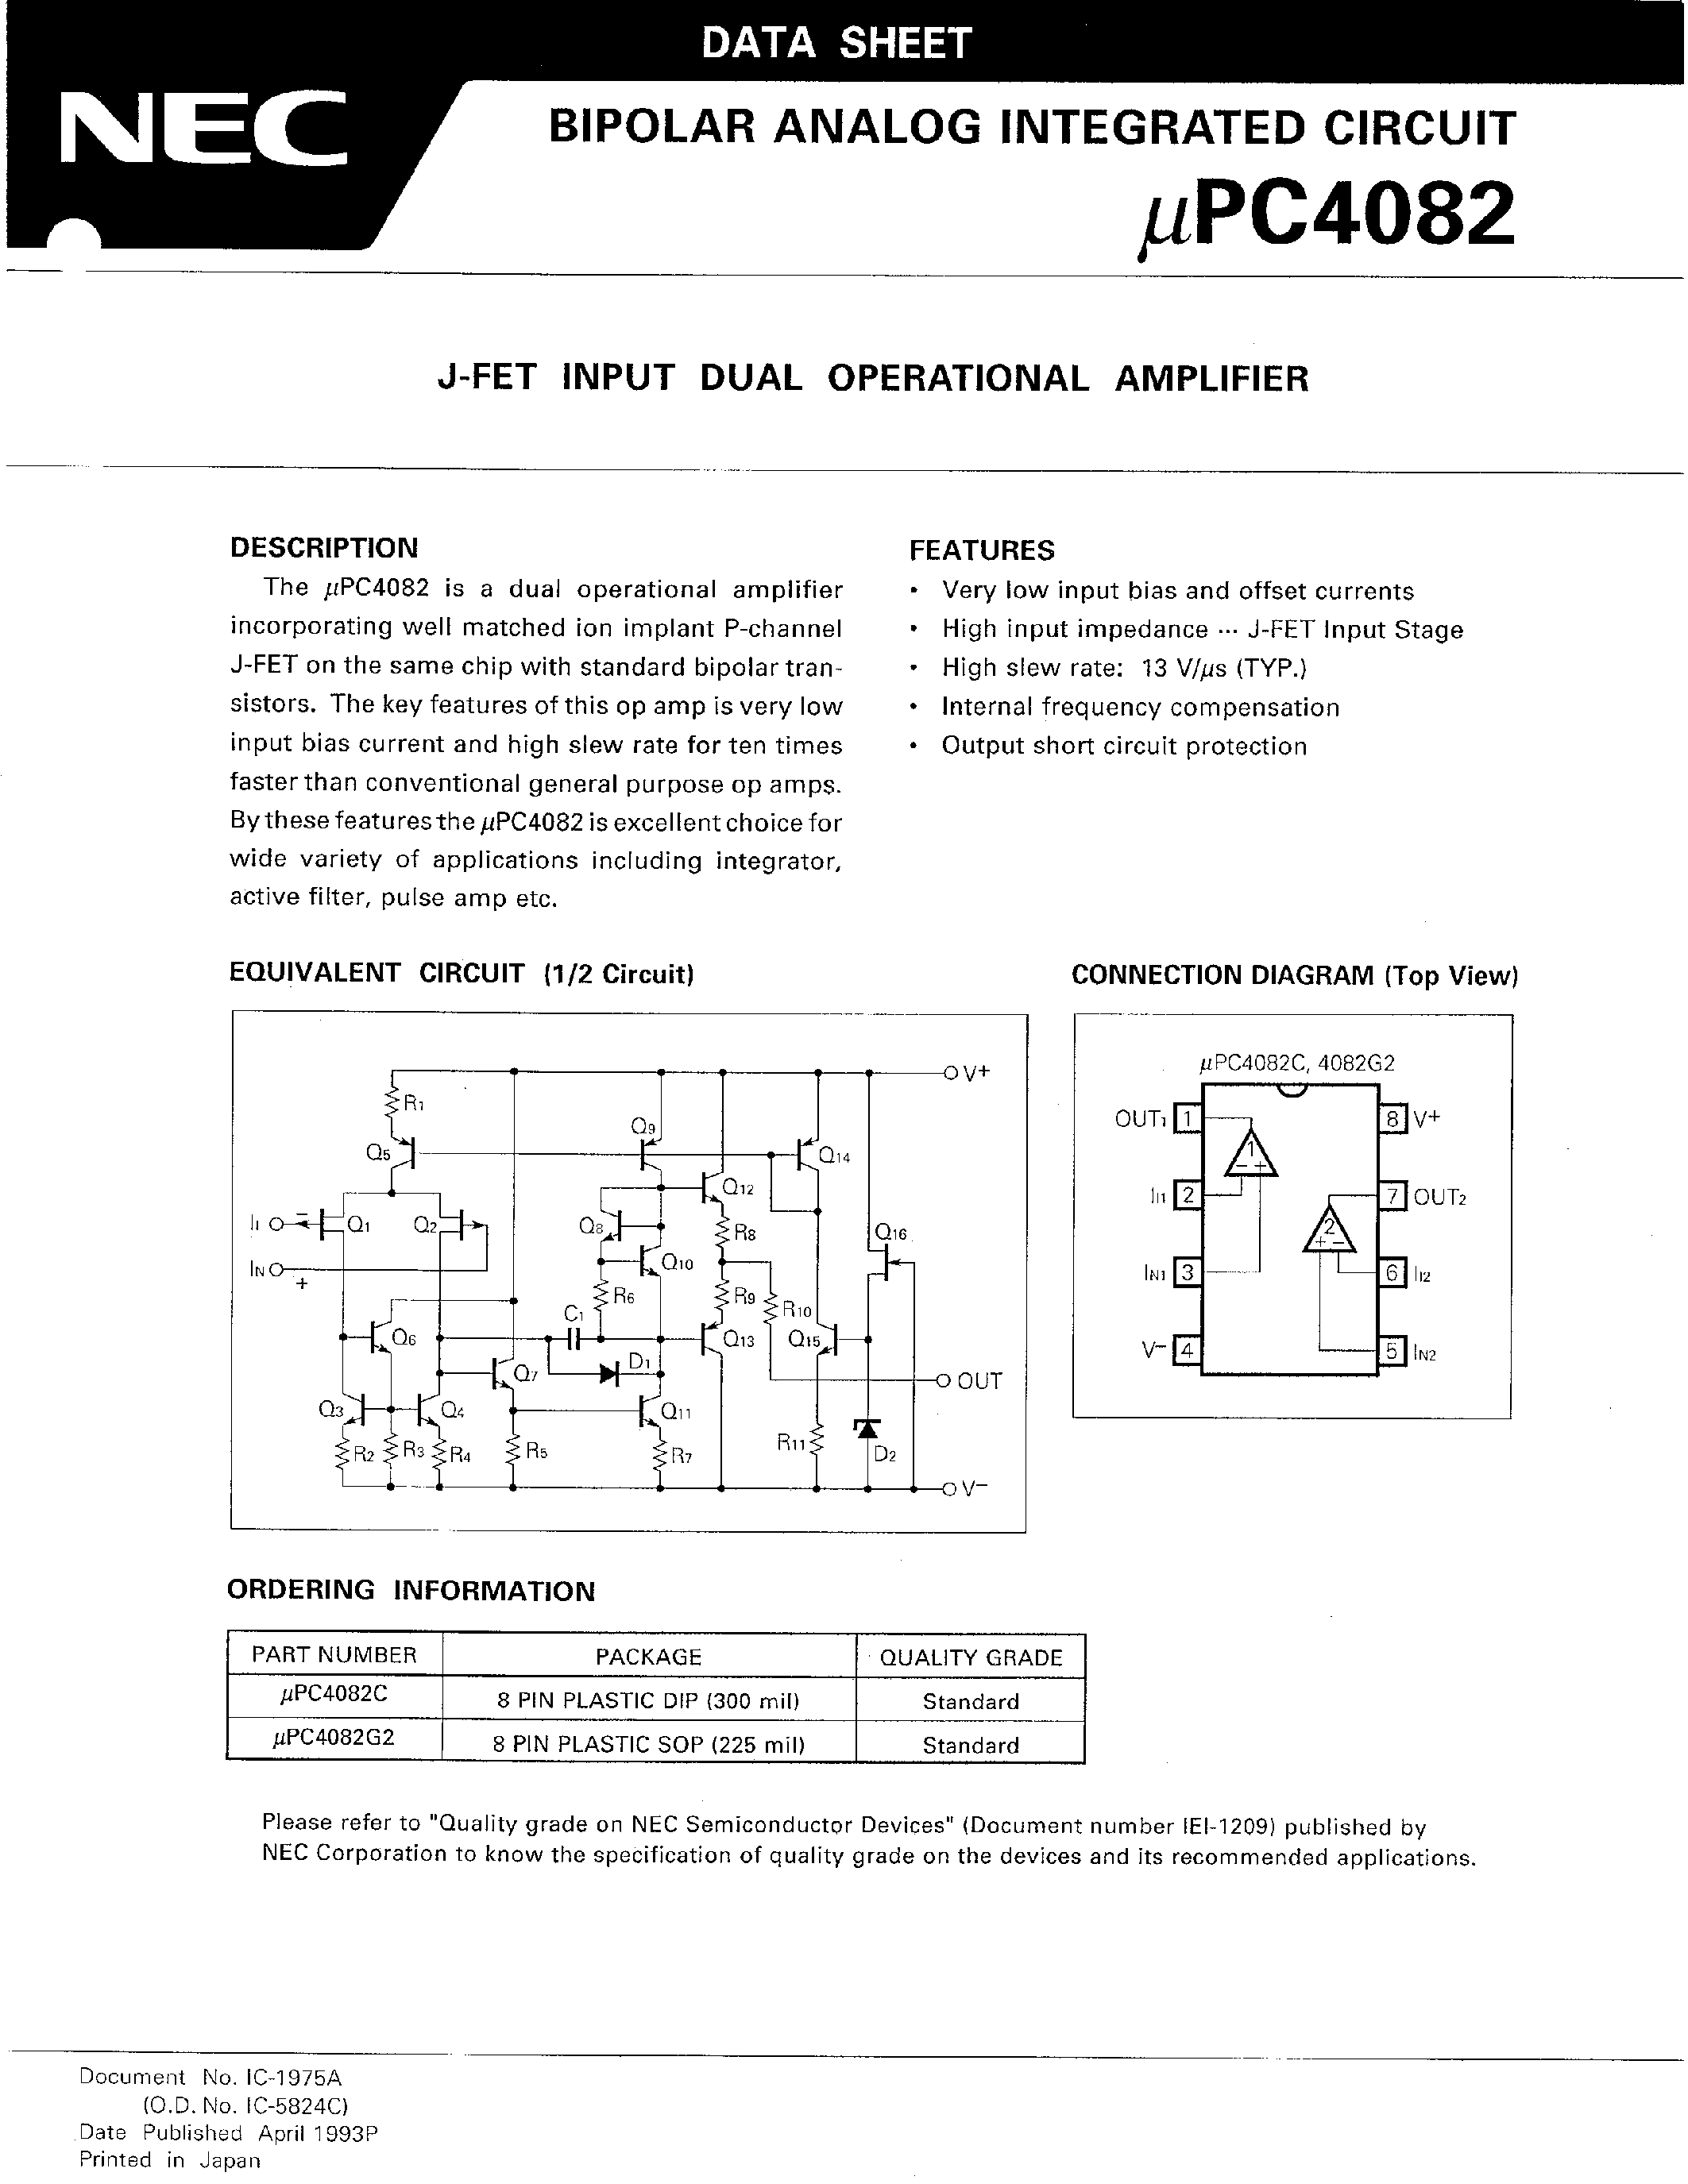 Даташит UPC4082C - J-FET INPUT DUAL OPERATIONAL AMPLIFIER страница 1